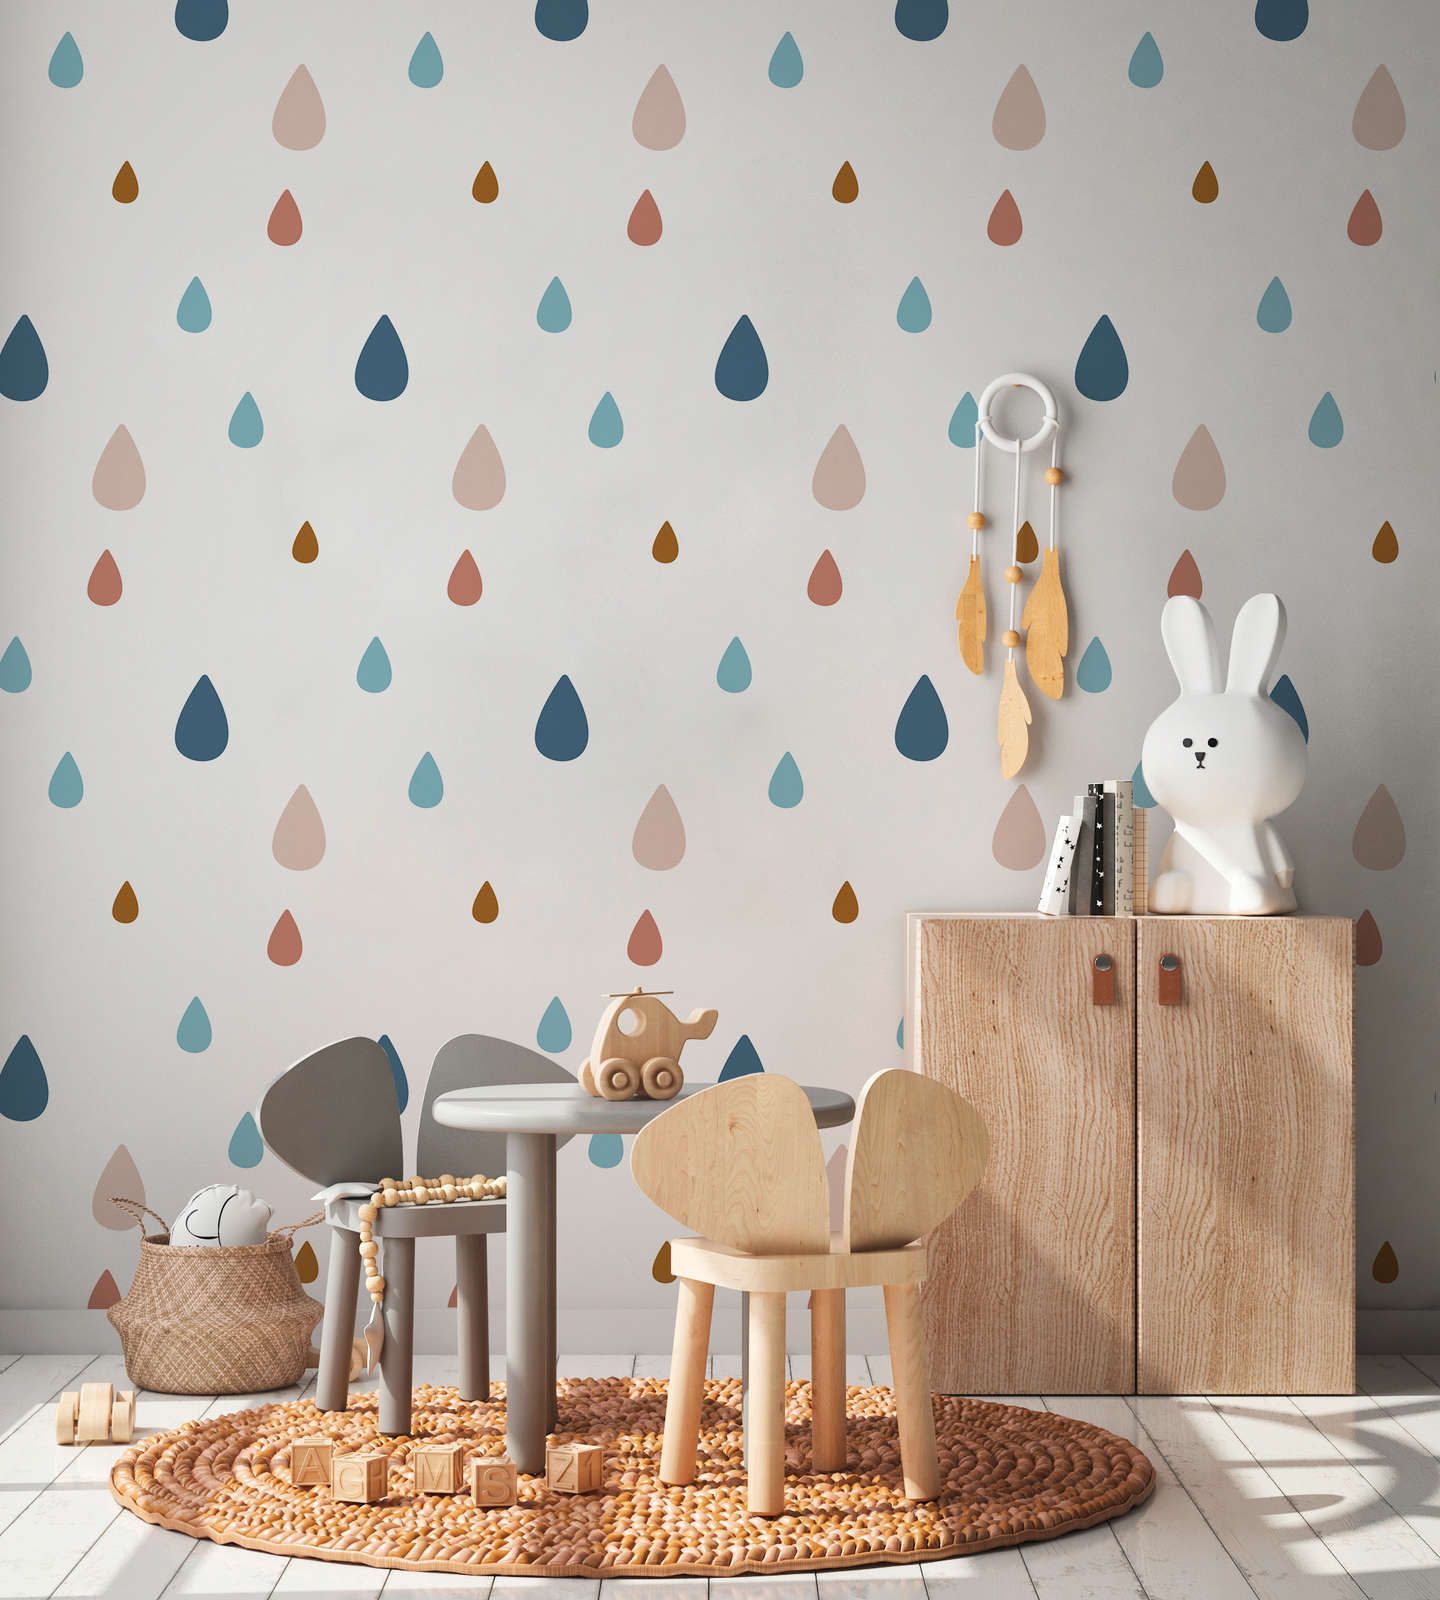             Fototapete fürs Kinderzimmer mit bunten Wassertropfen – Glattes & perlmutt-schimmerndes Vlies
        